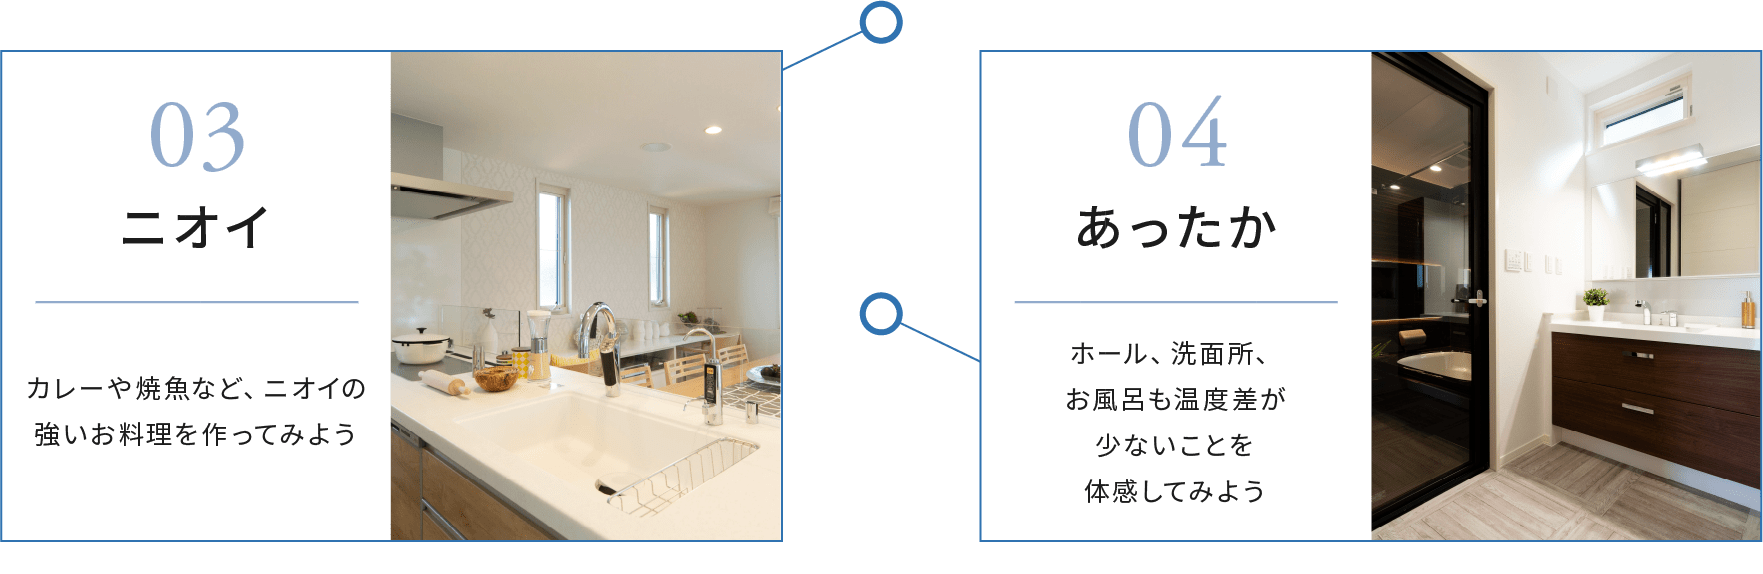 宿泊体感型 環境貢献体験型モデルハウス 東京セキスイハイム